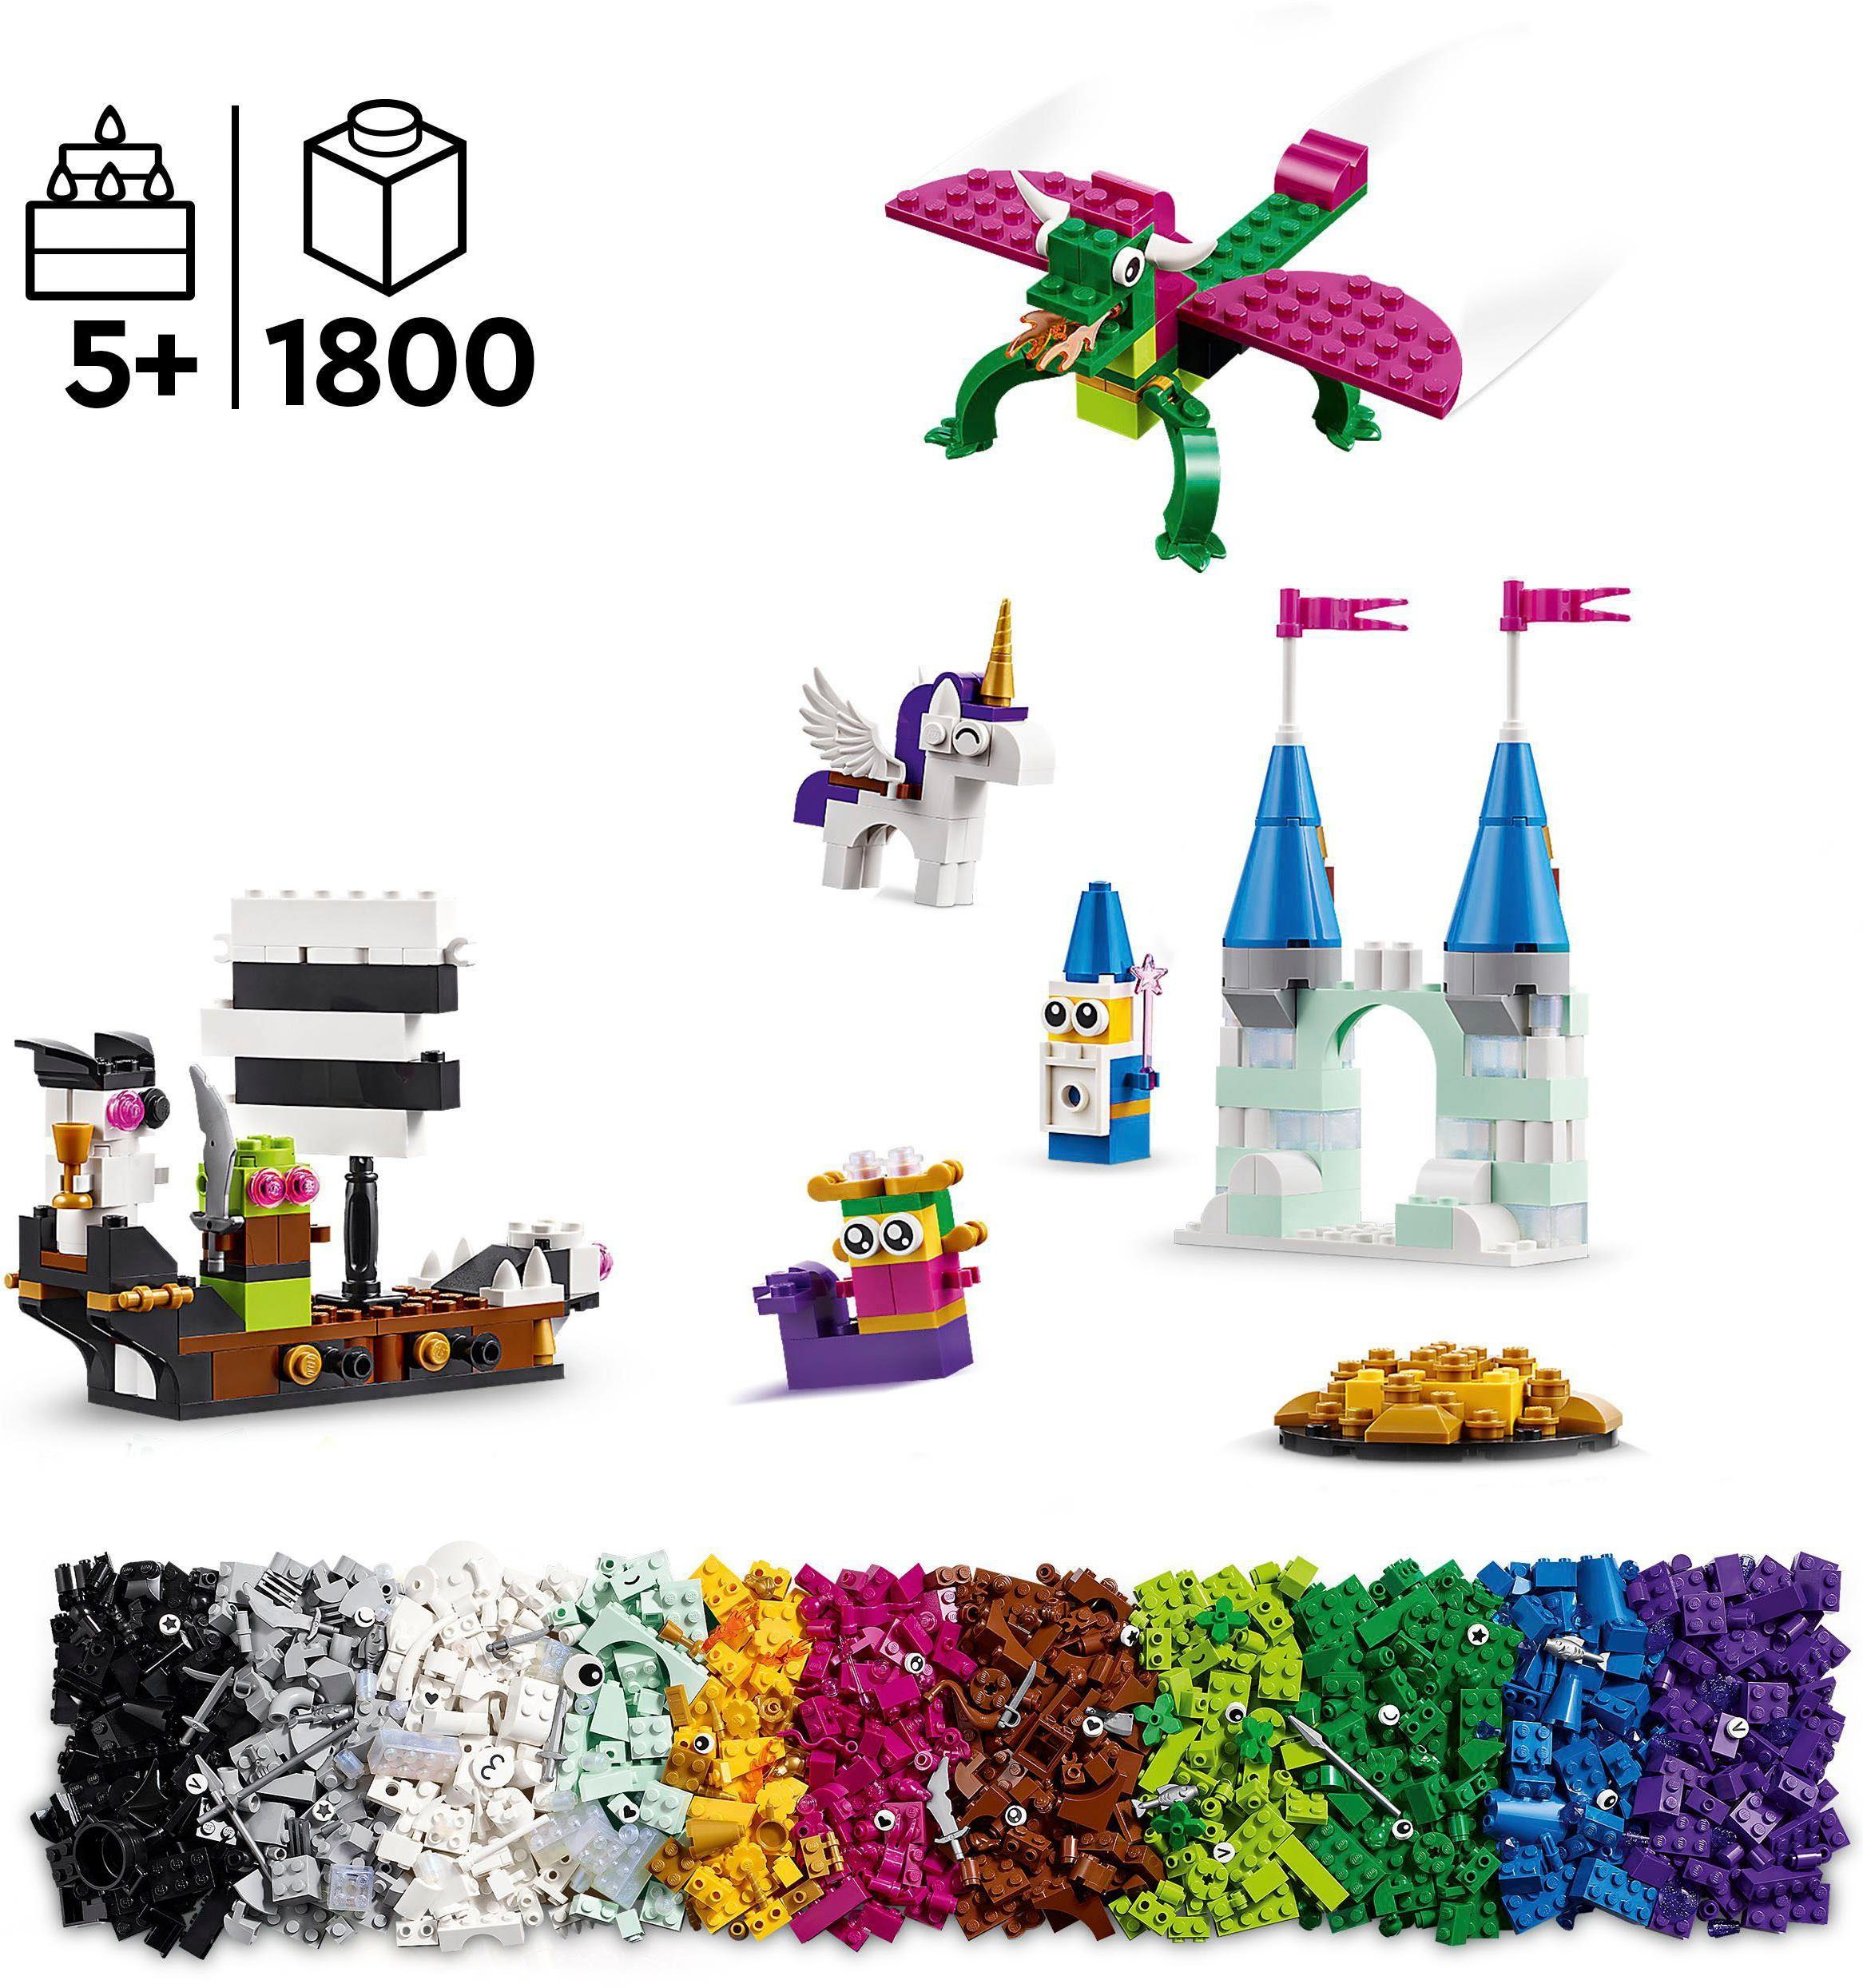 LEGO® Konstruktionsspielsteine Fantasie-Universum (11033), Europe LEGO® Classic, Made (1800 in St), Kreativ-Bauset